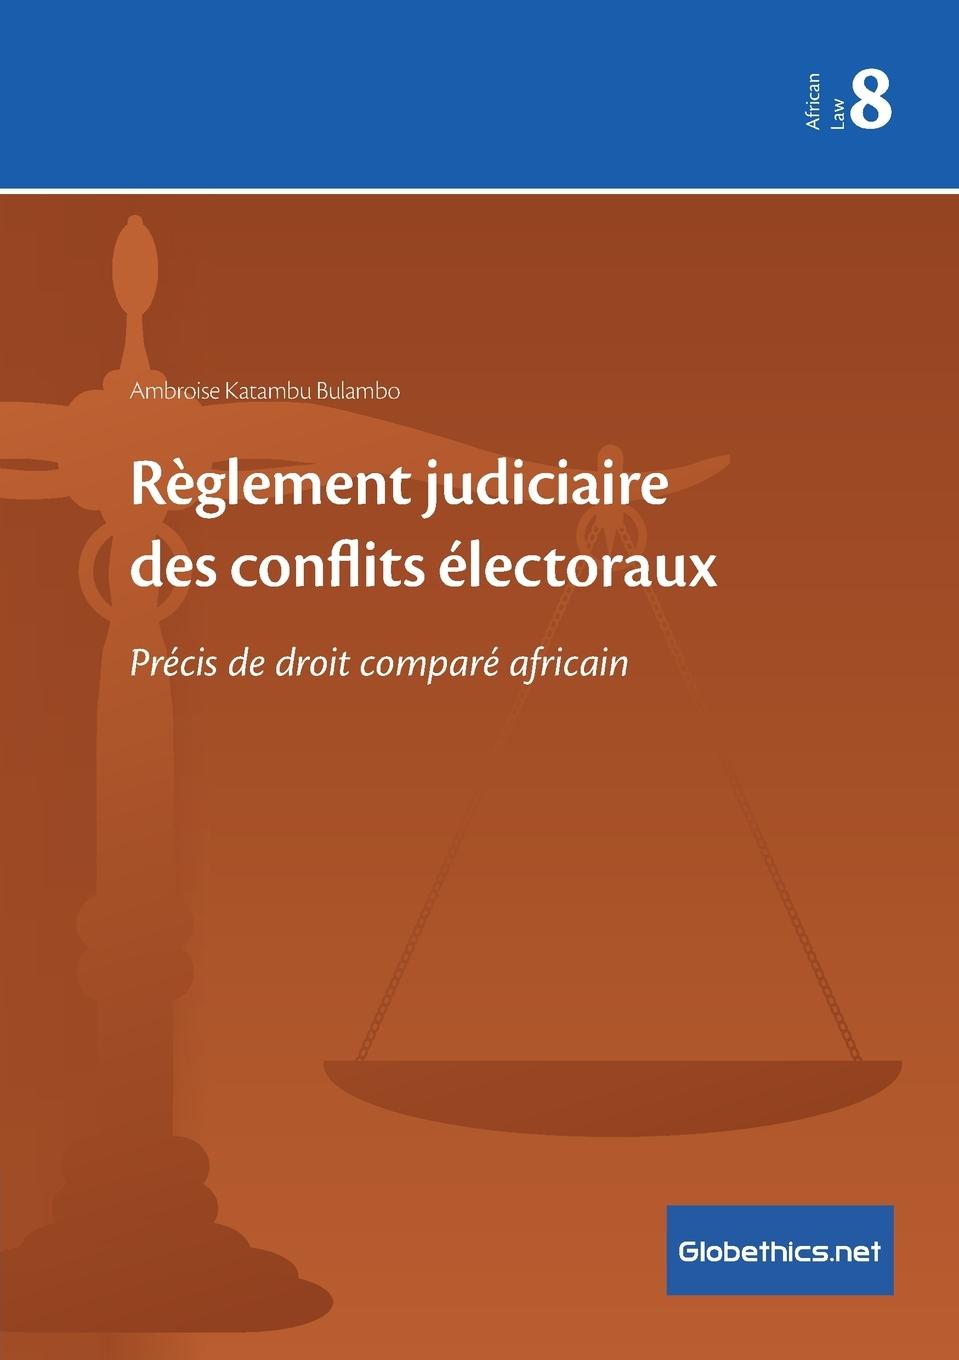 Carte Reglement judiciaire des conflits electoraux 